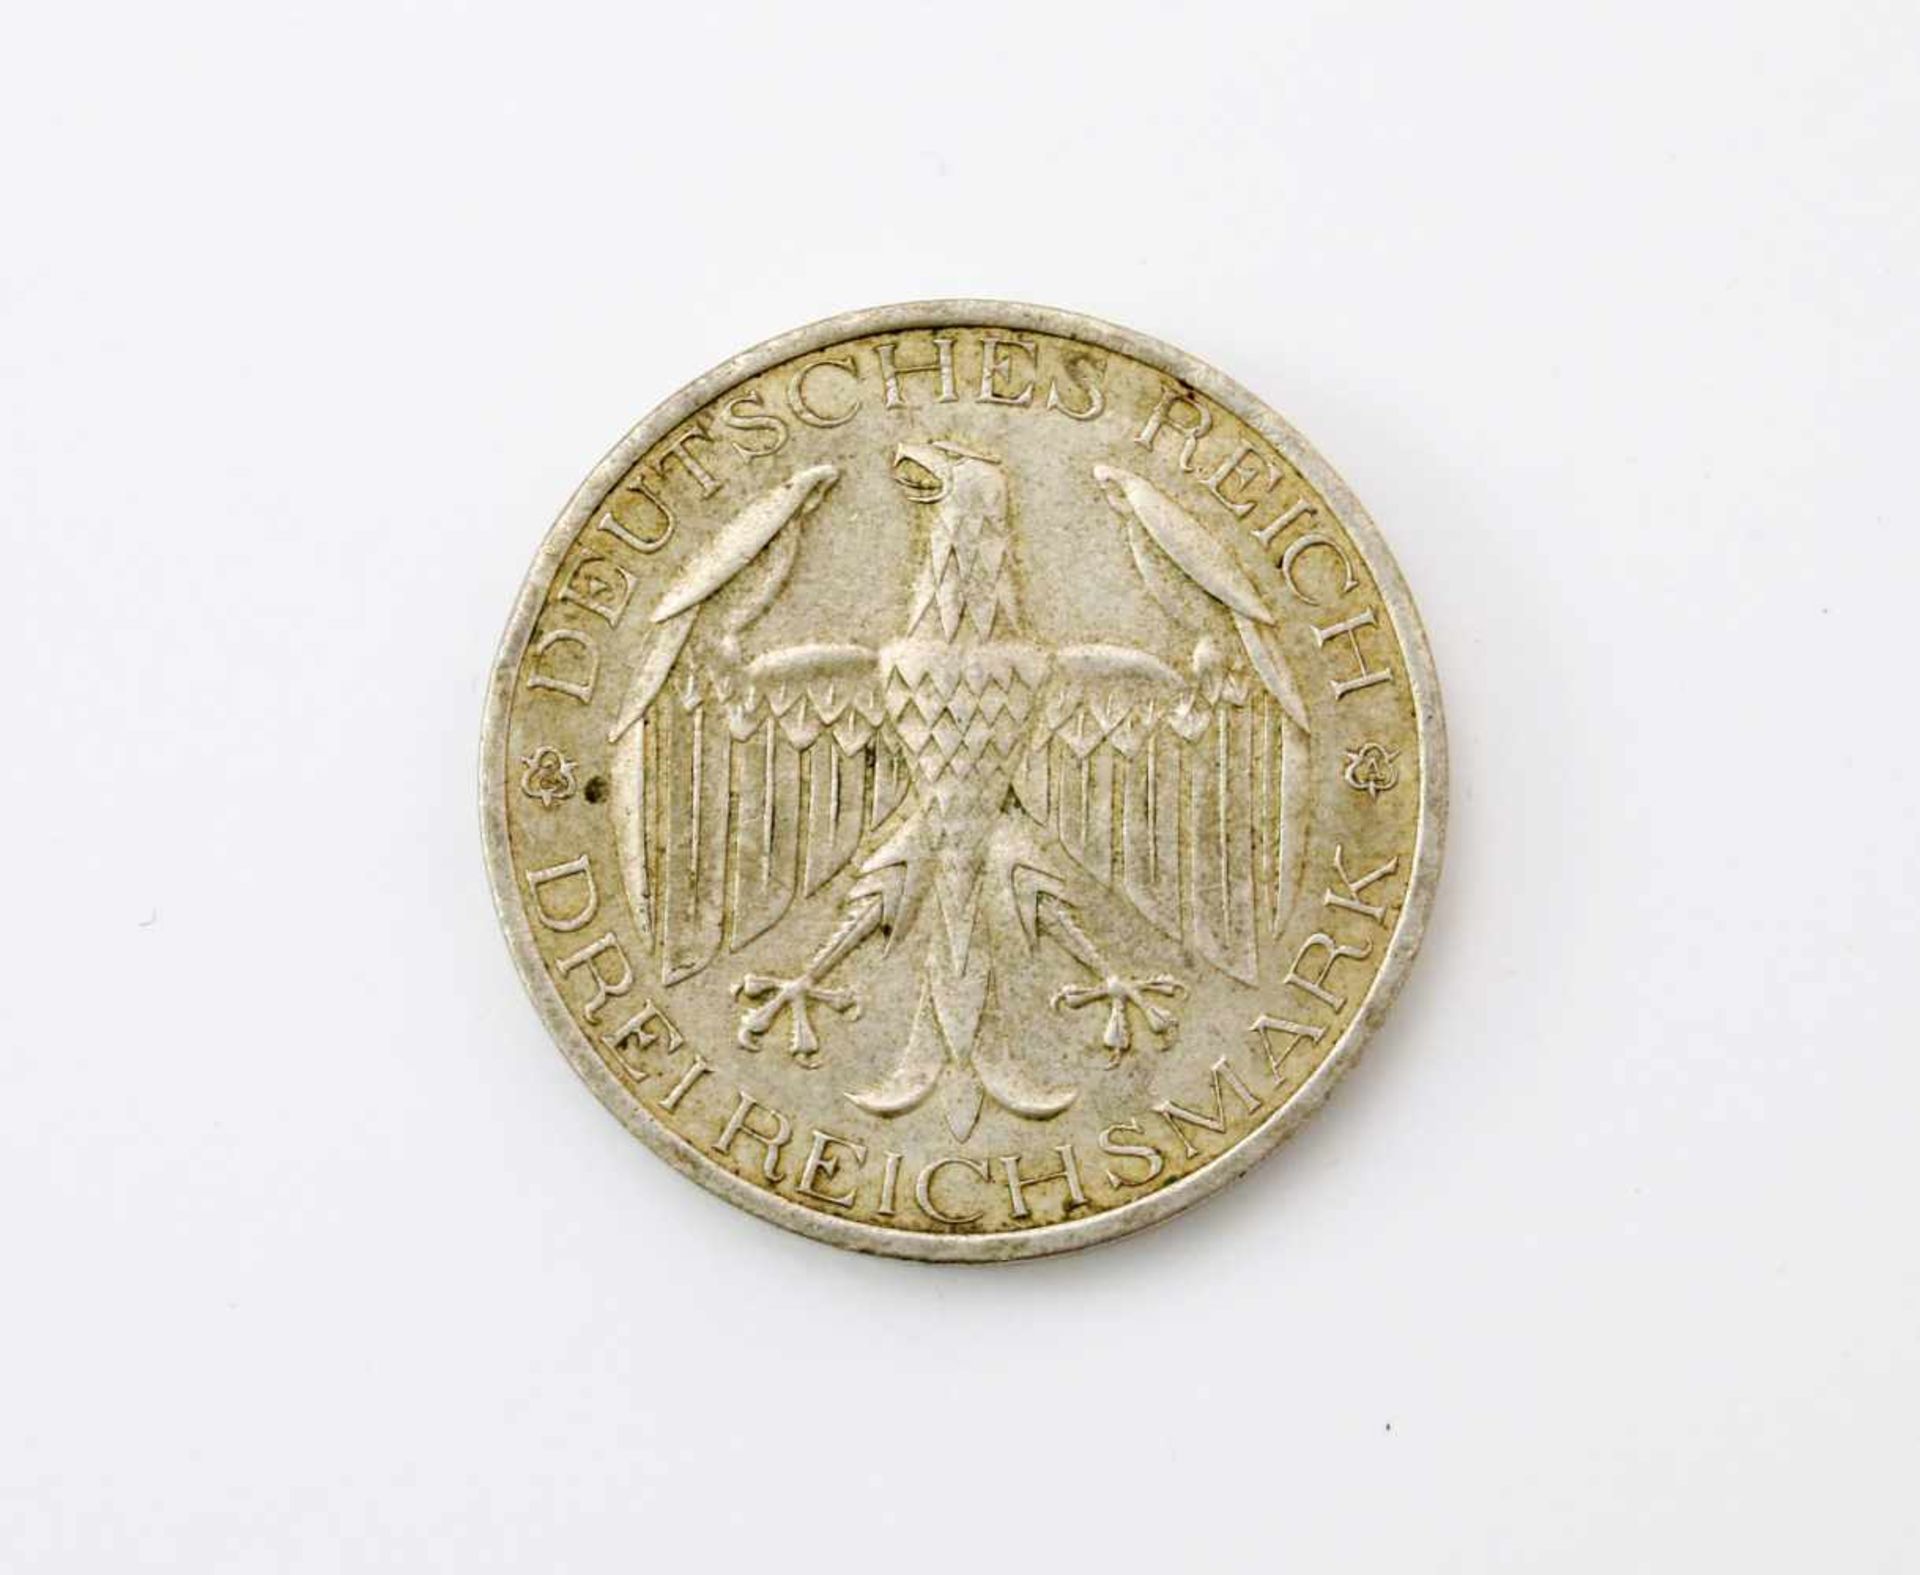 3 Reichsmark "Waldeck" 1929Silbermünze, vorzügliche Erhaltung, A, Vereinigung Waldecks mit Preußen. - Image 2 of 2